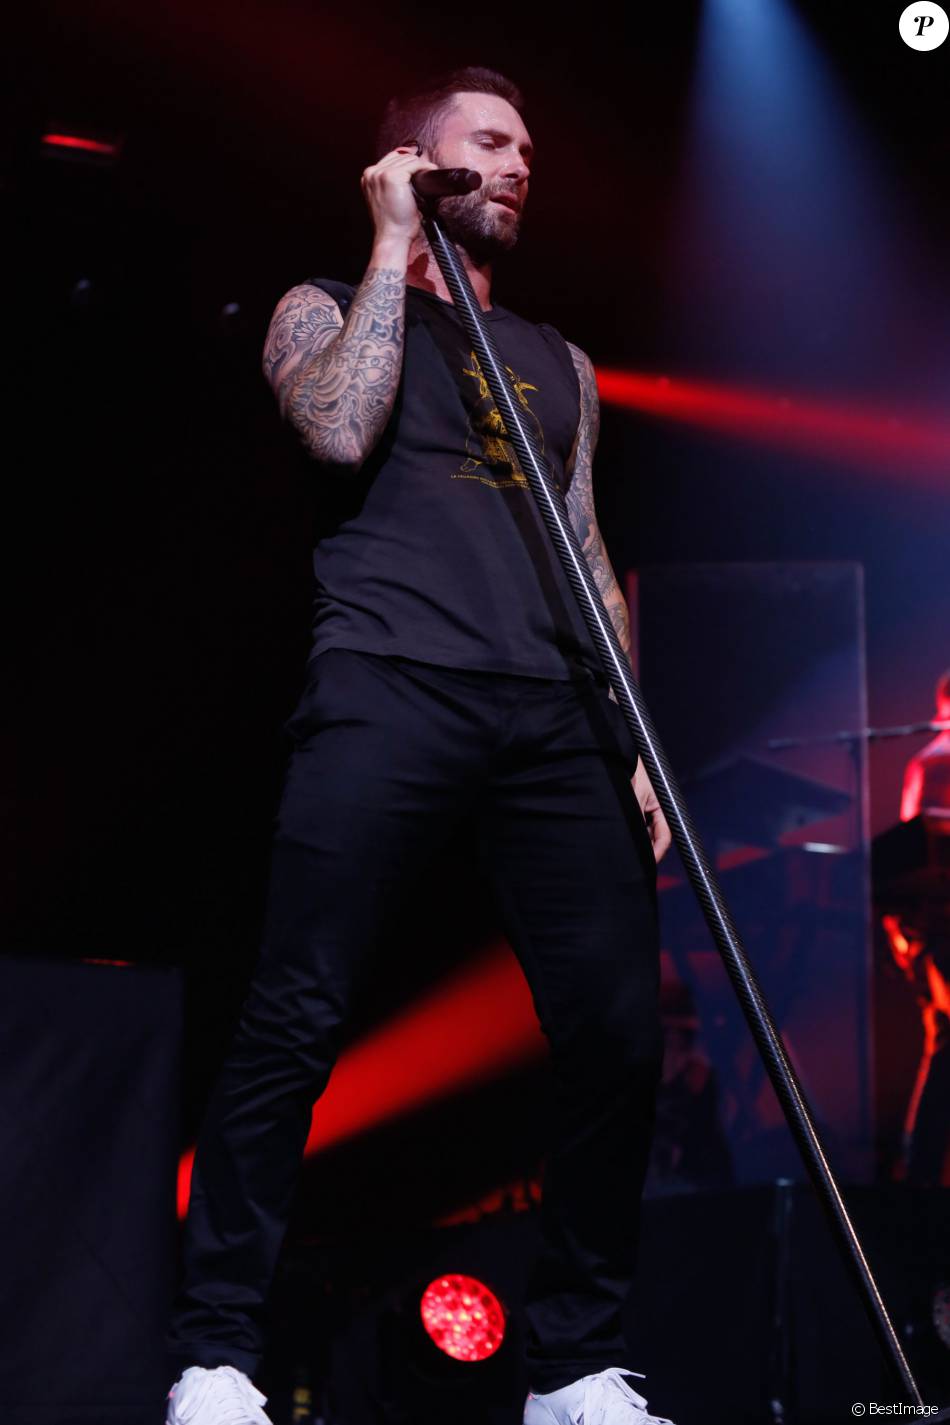 Adam Levine et son groupe Maroon 5 en concert au Zénith à Paris. Le 24 mai 2015